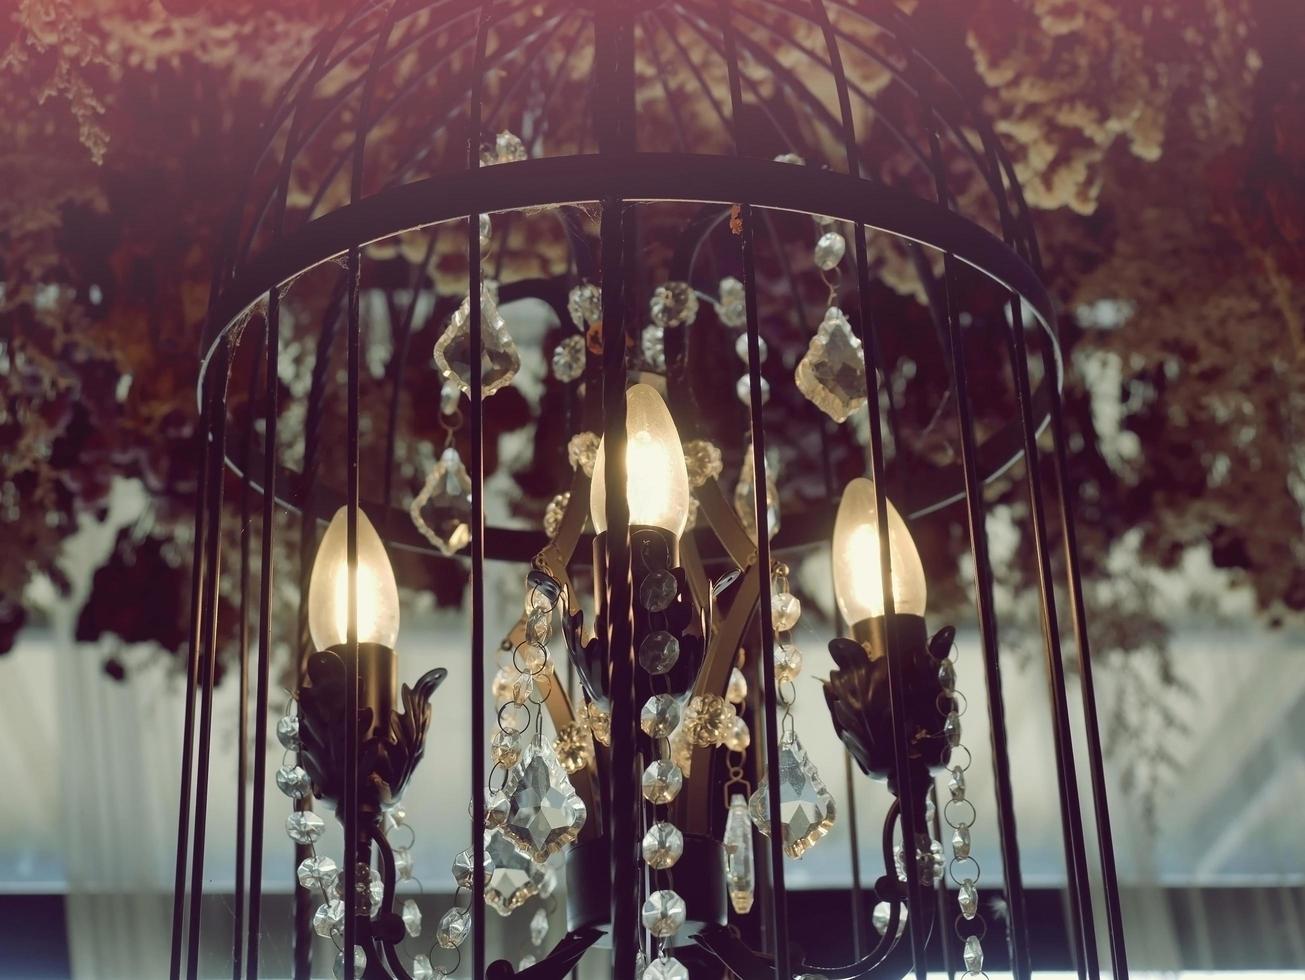 duur lampen versierd met duur ornamenten scheen helder. foto